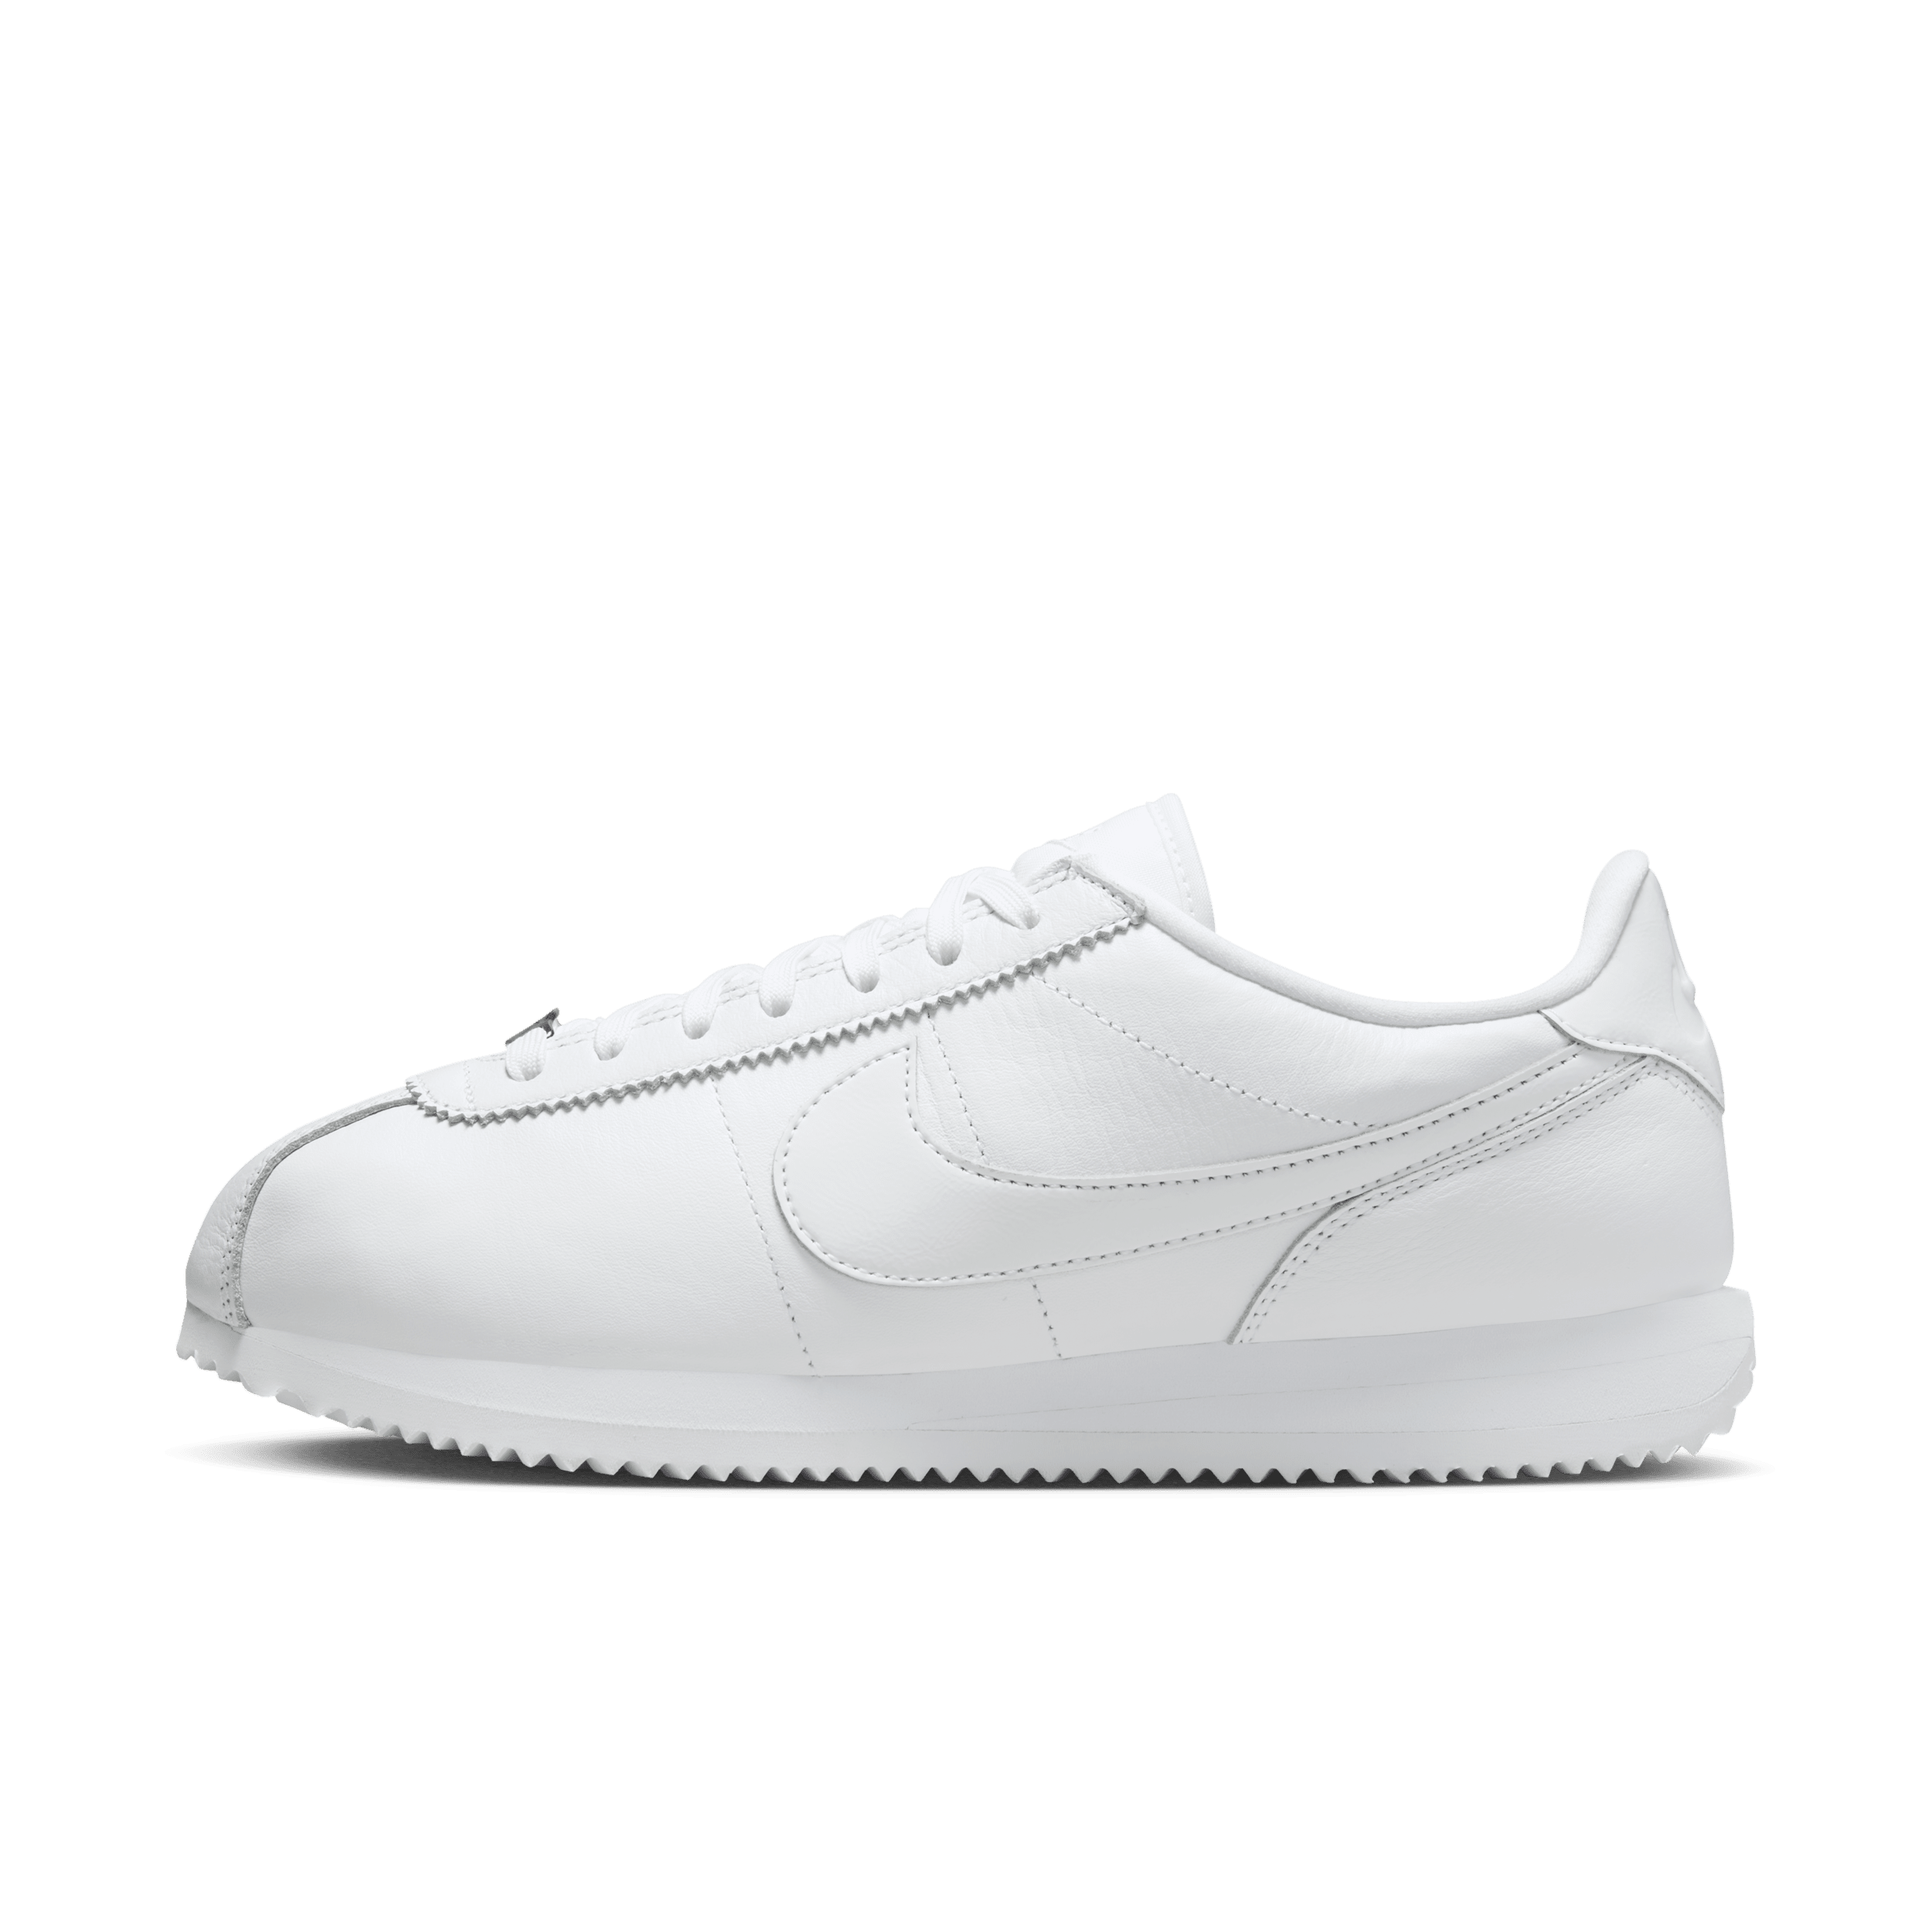 Nike Cortez 23 Premium Leather Zapatillas - Mujer - Blanco